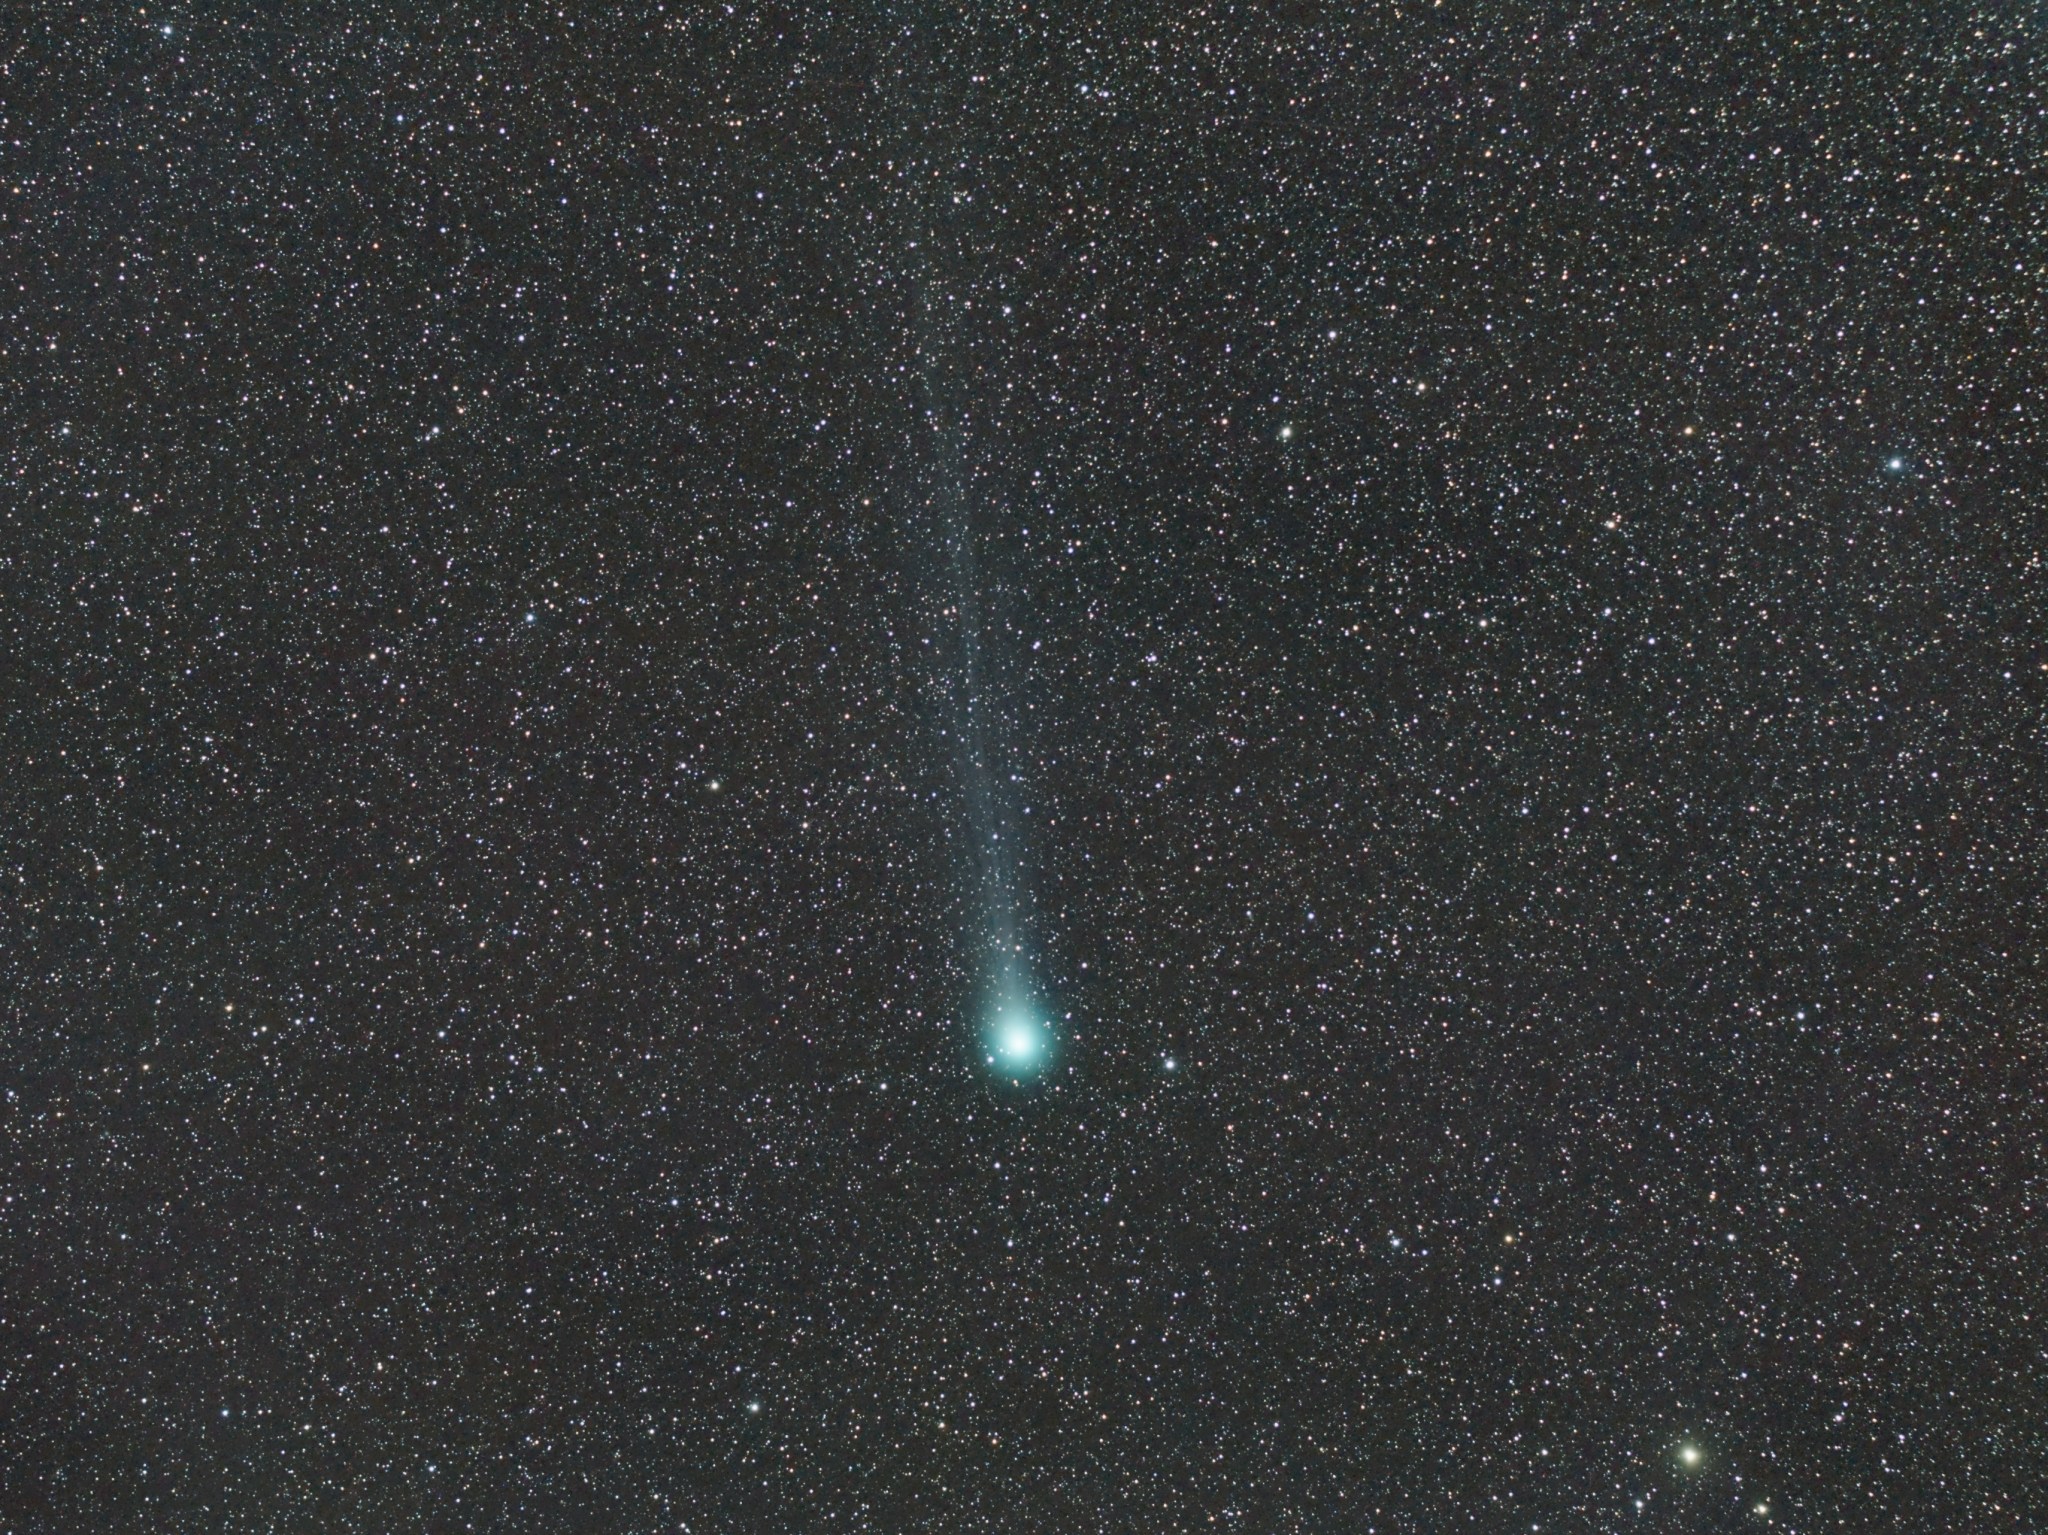 Image of Comet Lovejoy